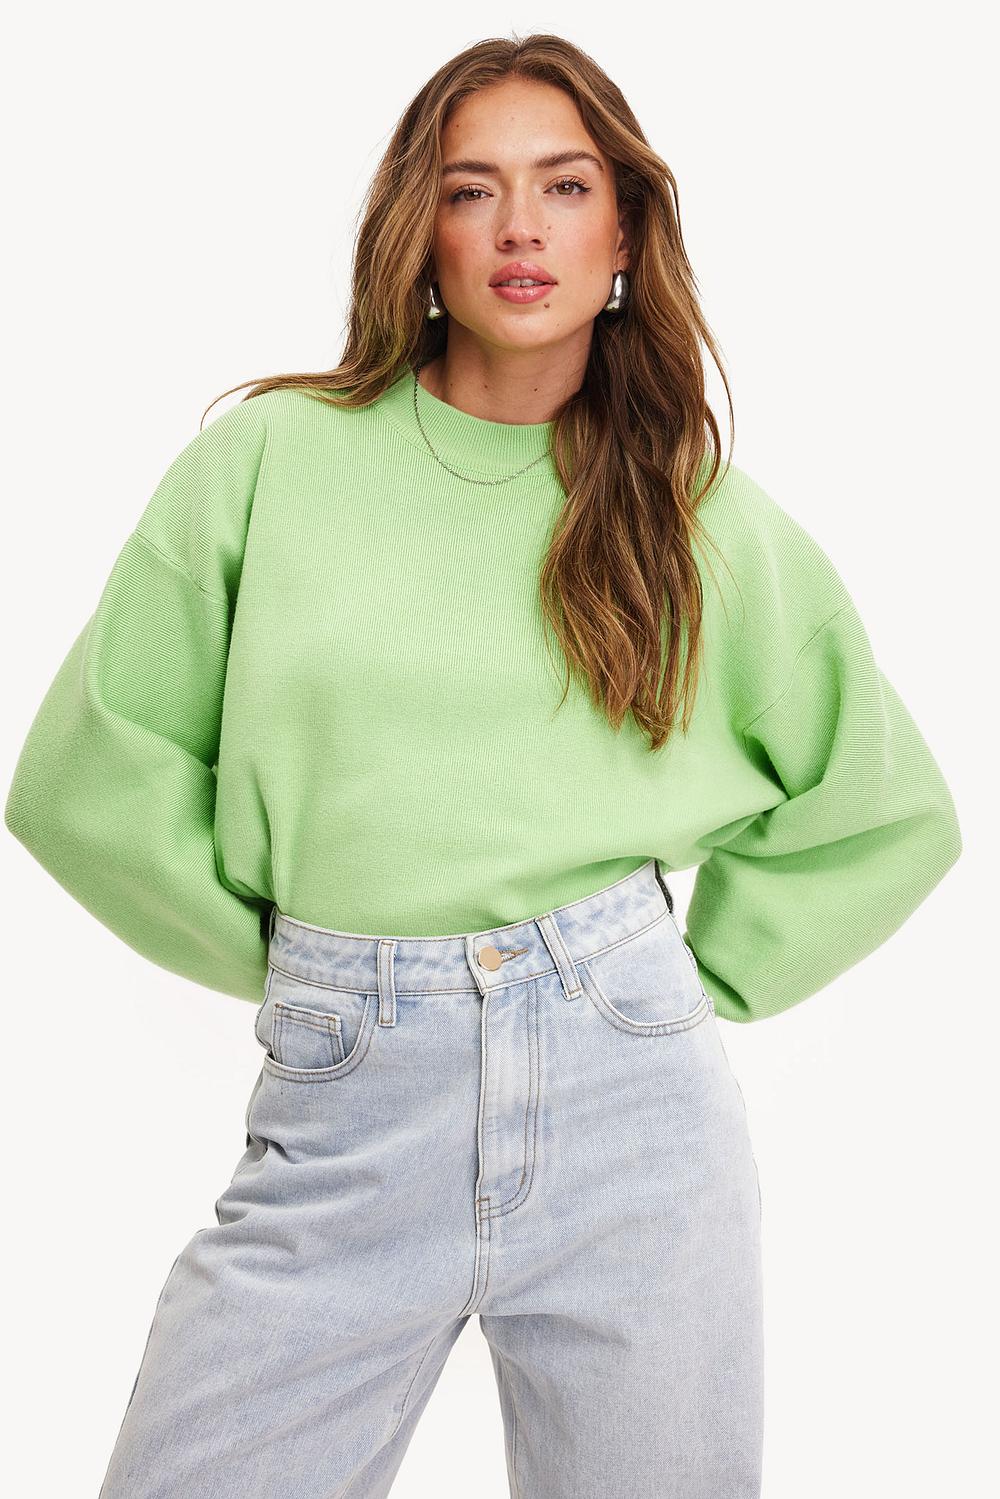 Mint green jumper